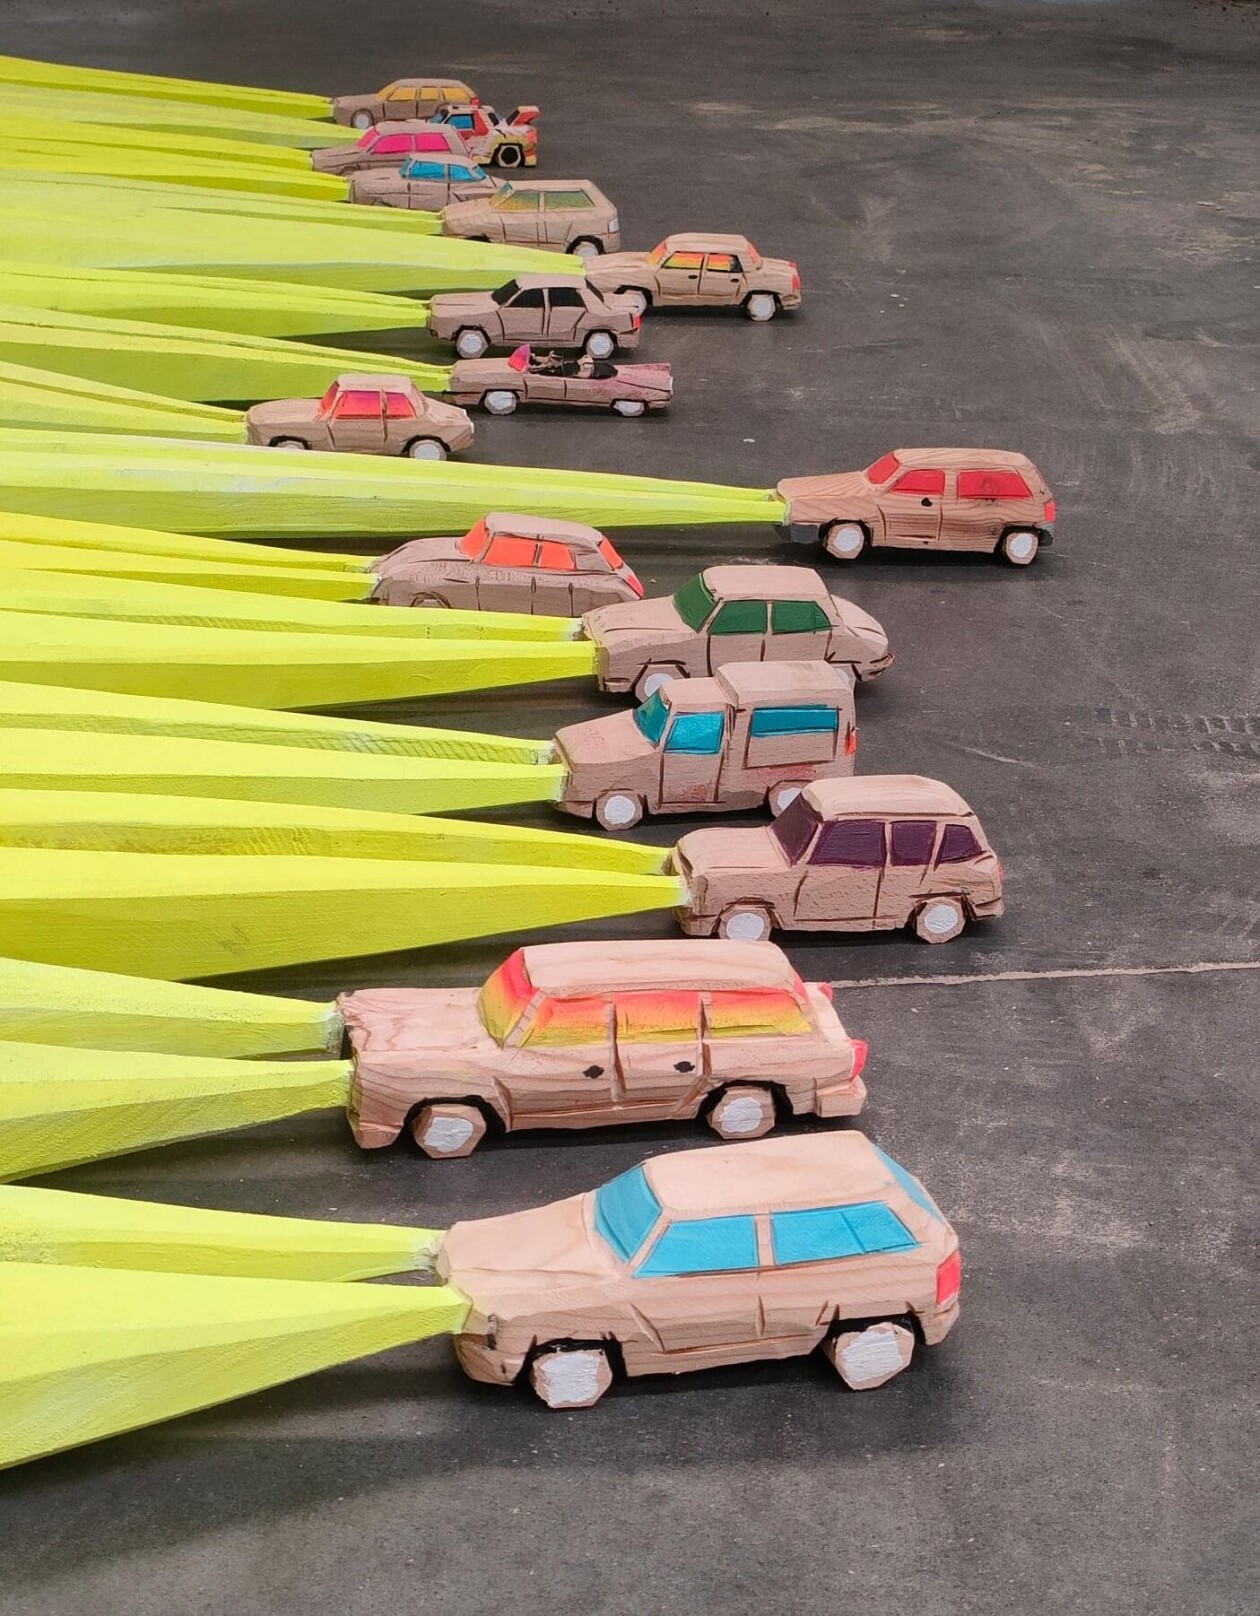 Solid Lights, Surreal Car Sculptures By Kiko Miyares (5)